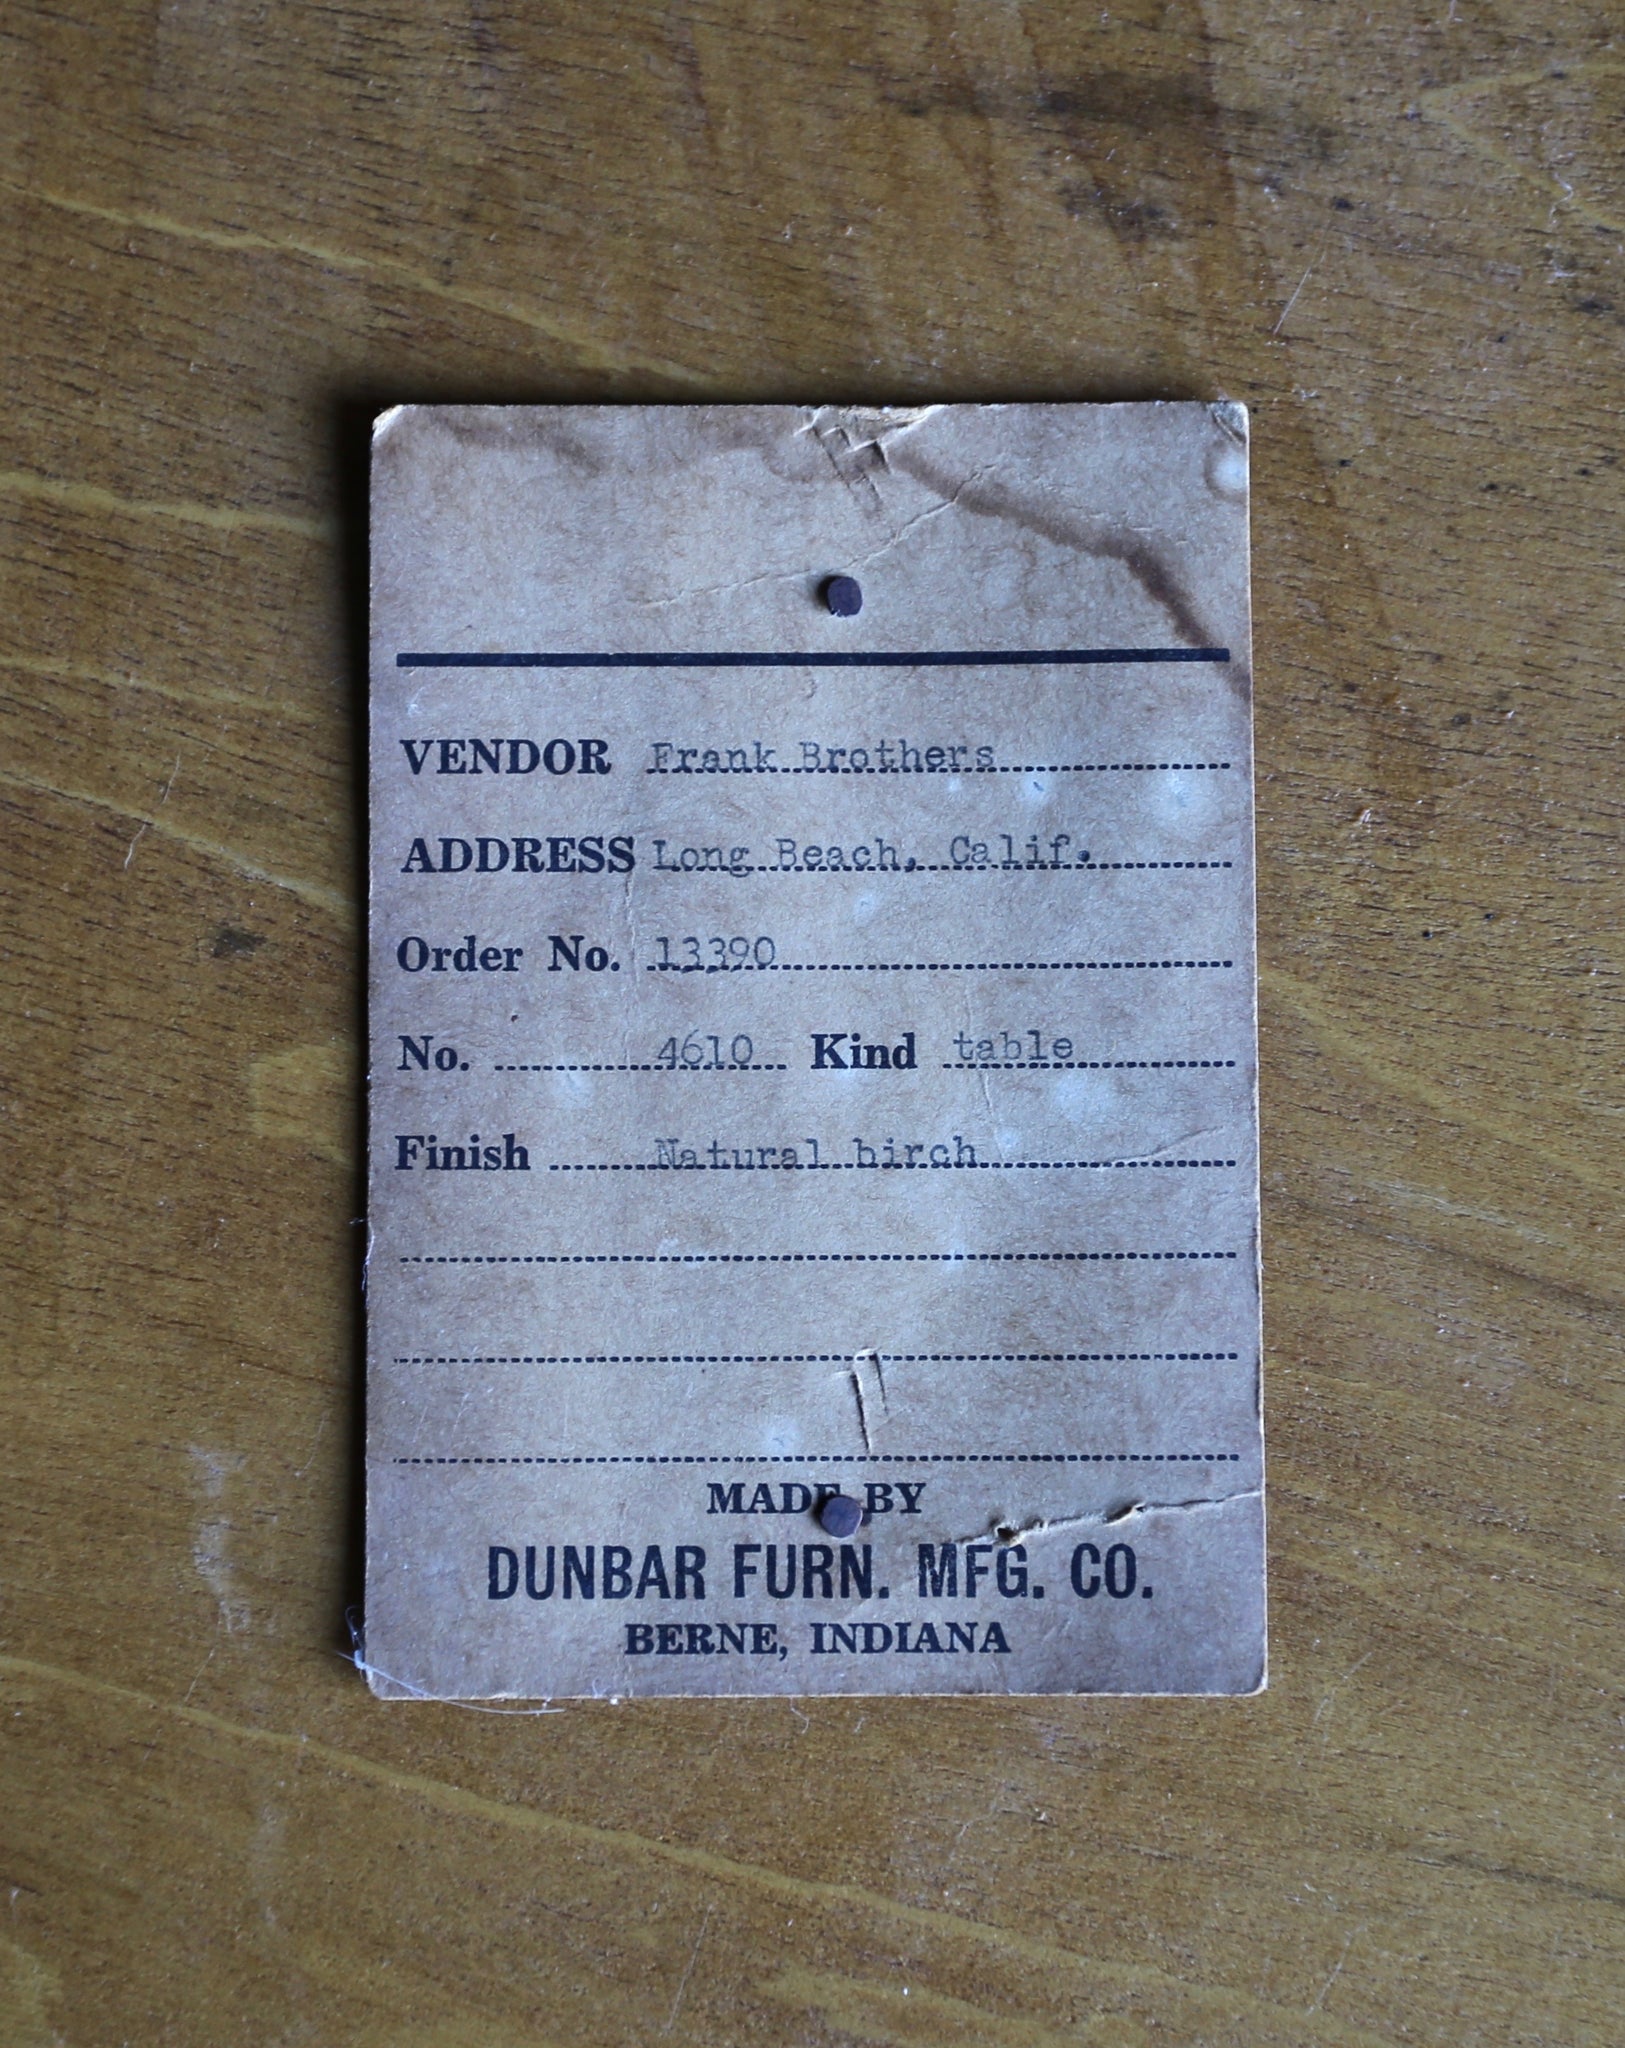 = SOLD = Edward Wormley Table Model No. 4610 for Dunbar circa 1950